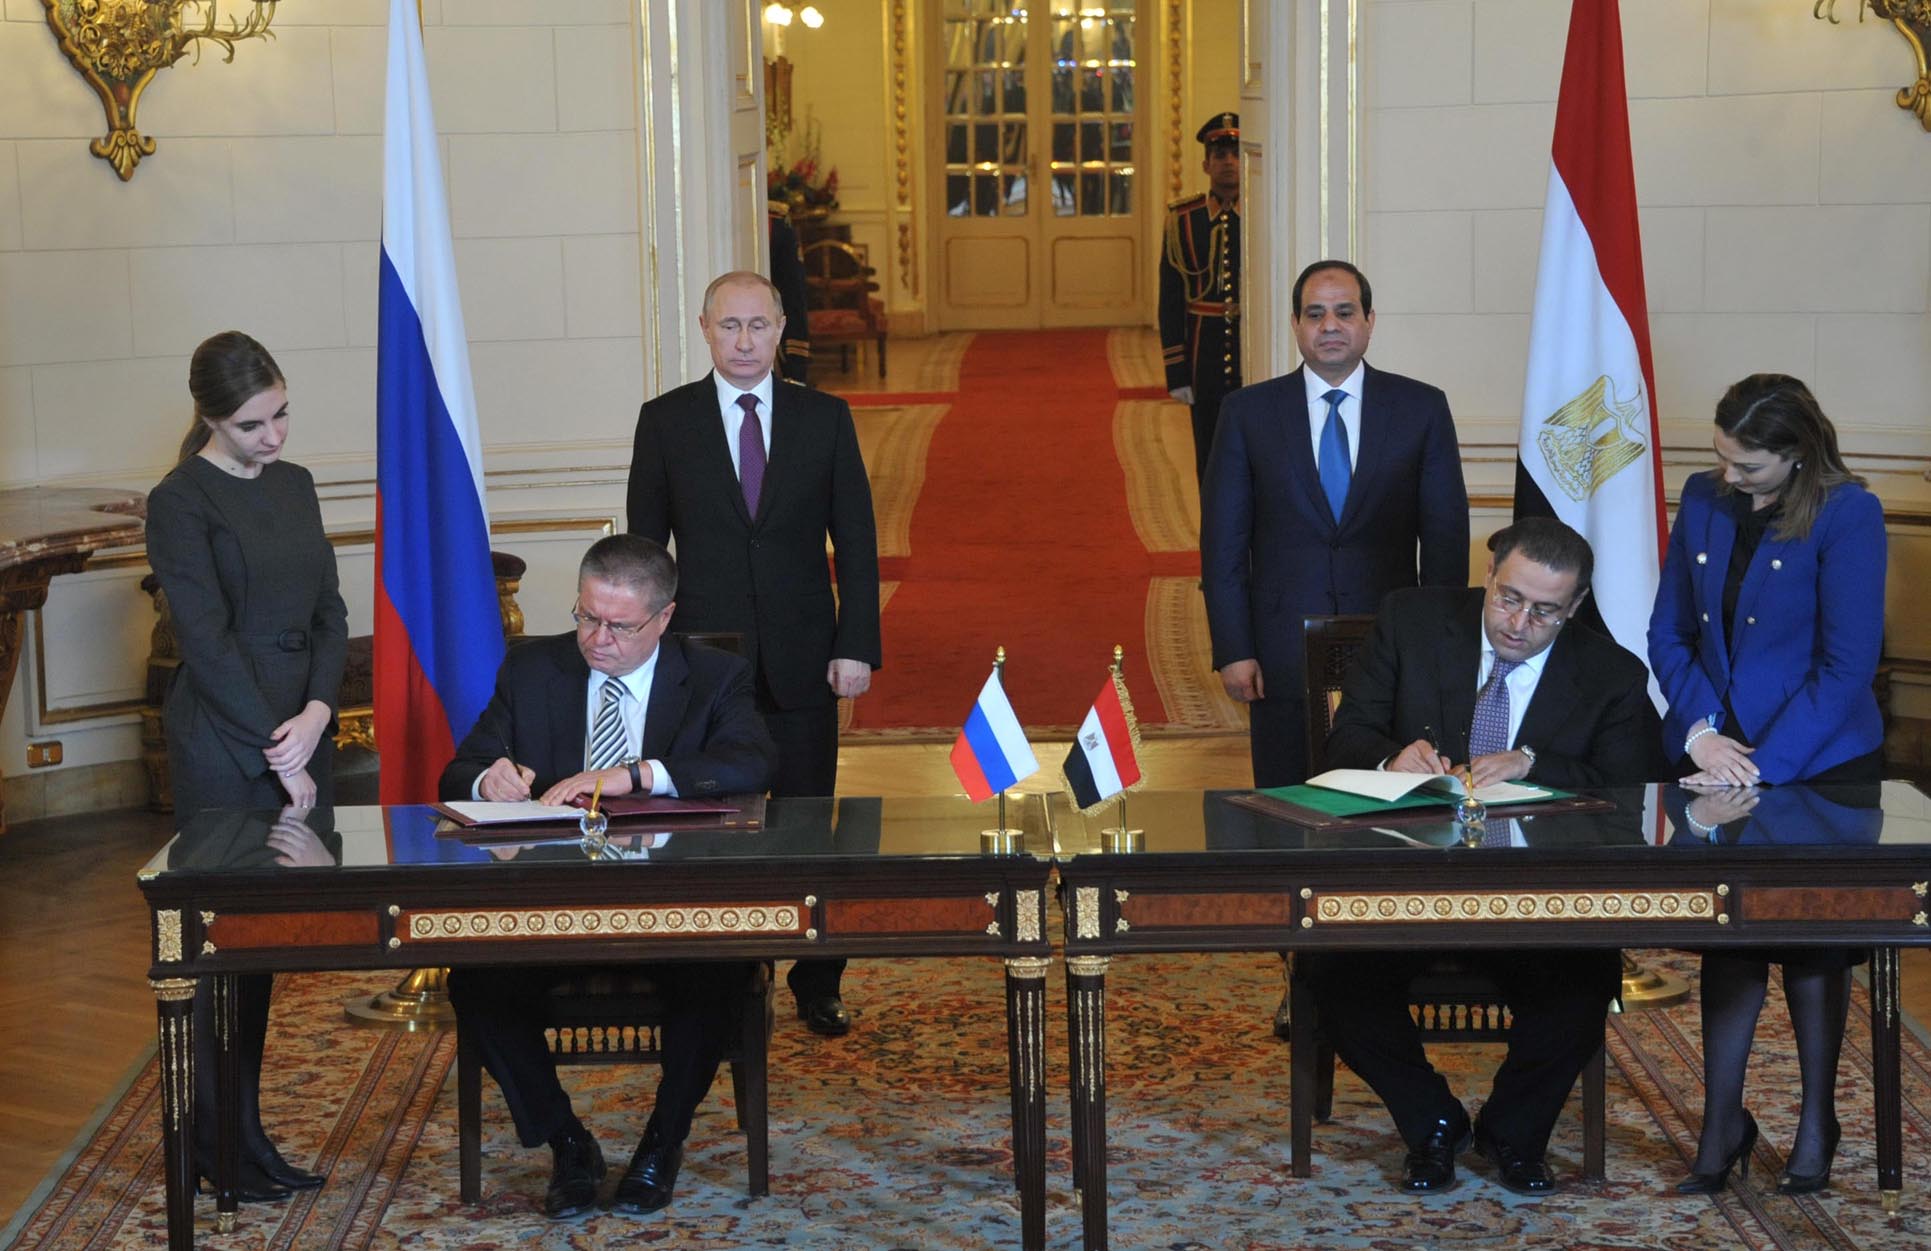 وكالة: روسيا تعلن اعتزامها توقيع اتفاقية مع مصر لإقامة منطقة تجارة حرة